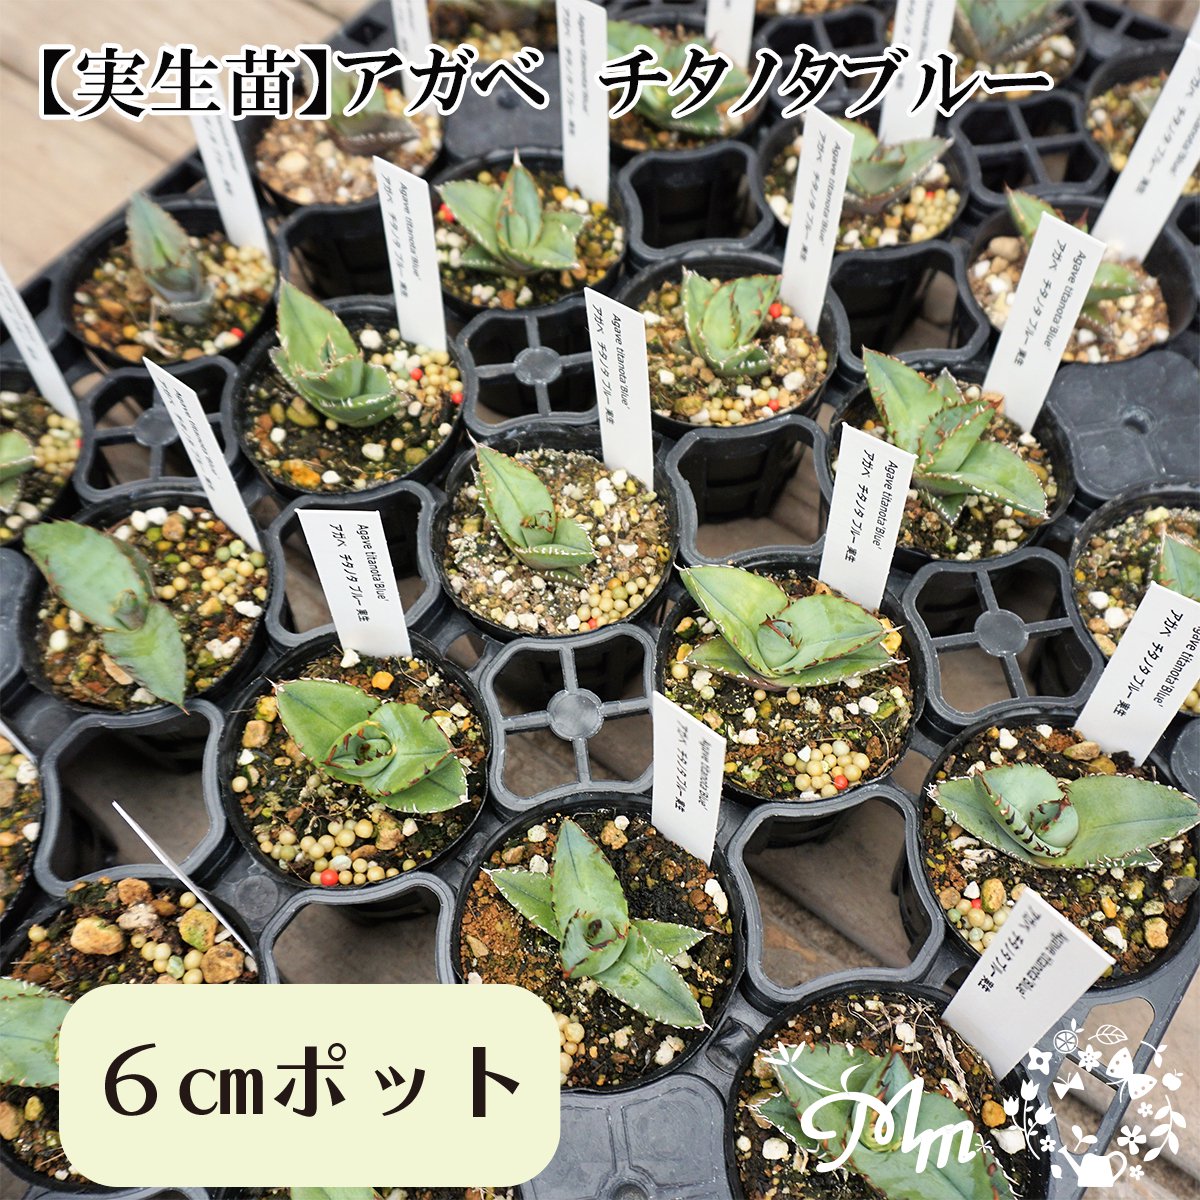 【実生苗(実生株)】Agave titanota blue(アガベ チタノタブルー)6㎝ポット苗